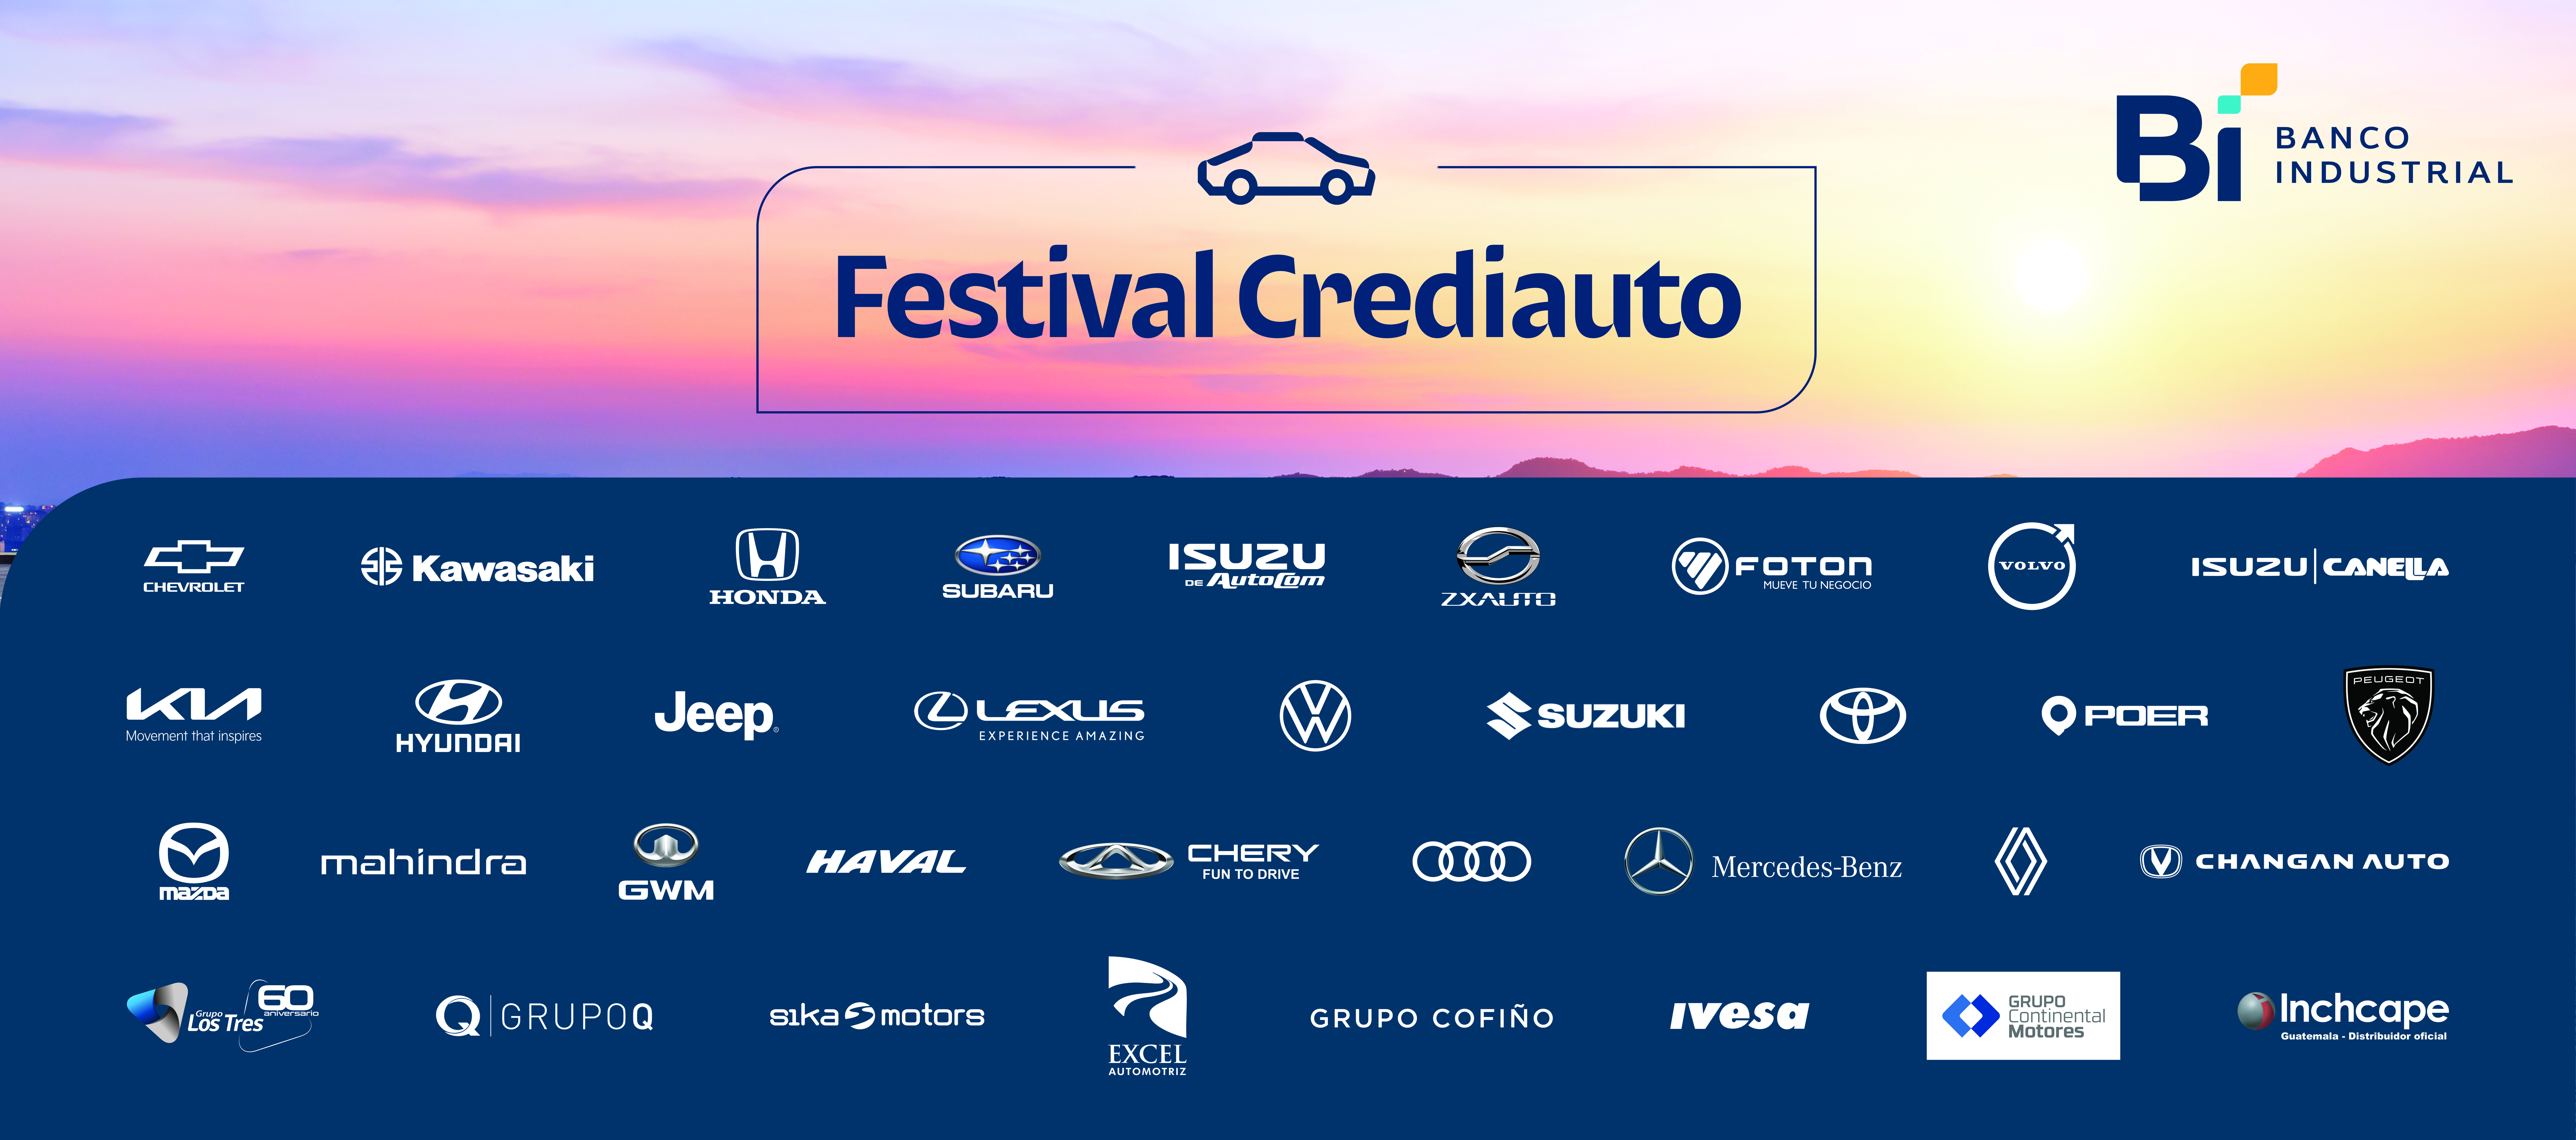 Festival Crediauto